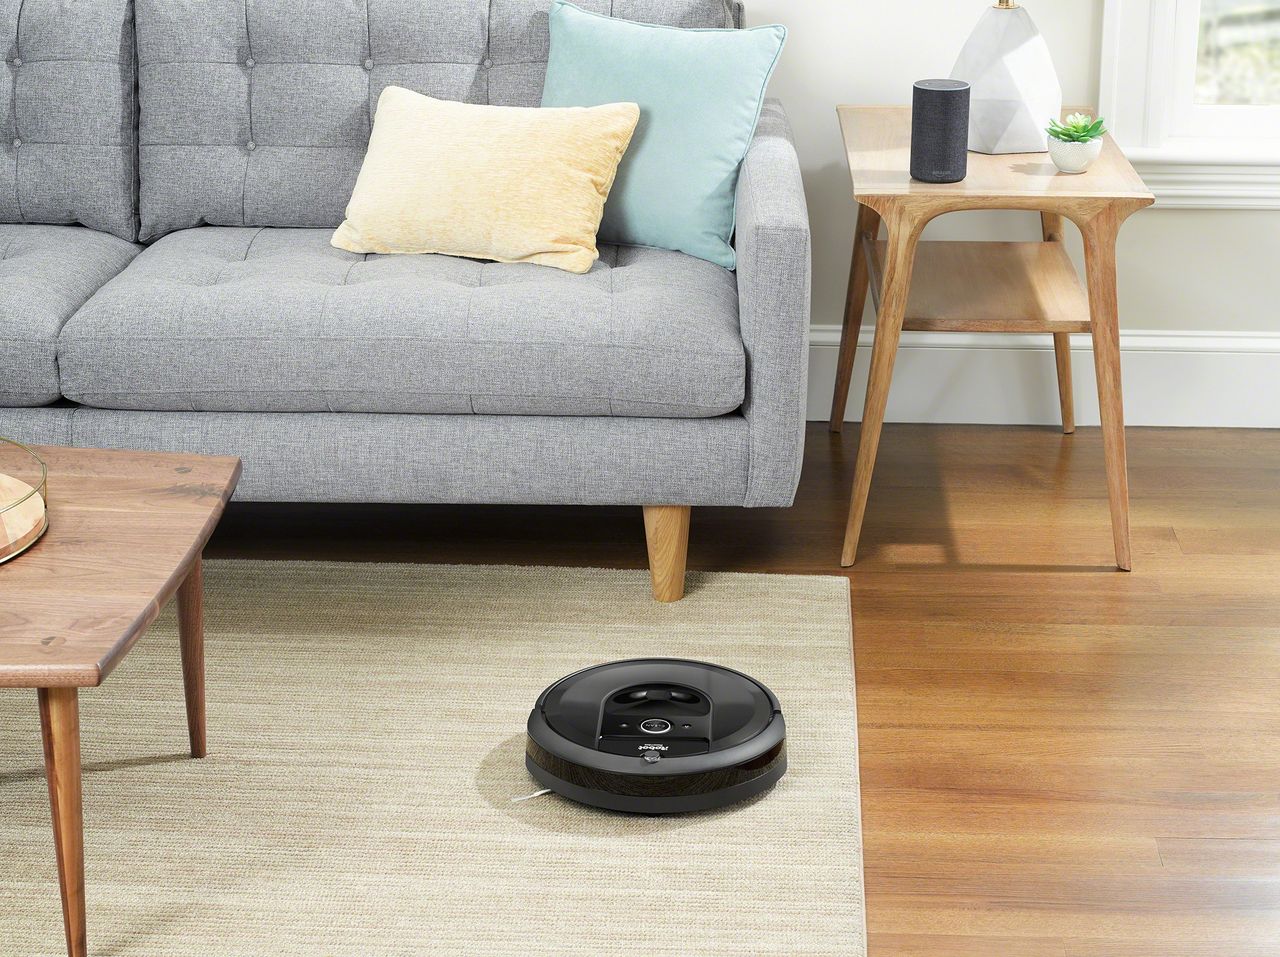 Sprzątanie 4.0? Czas przekazać mniej przyjemne obowiązki - Robot sprzątający Roomba to urządzenie o niewielkich rozmiarach i ogromnych możliwościach